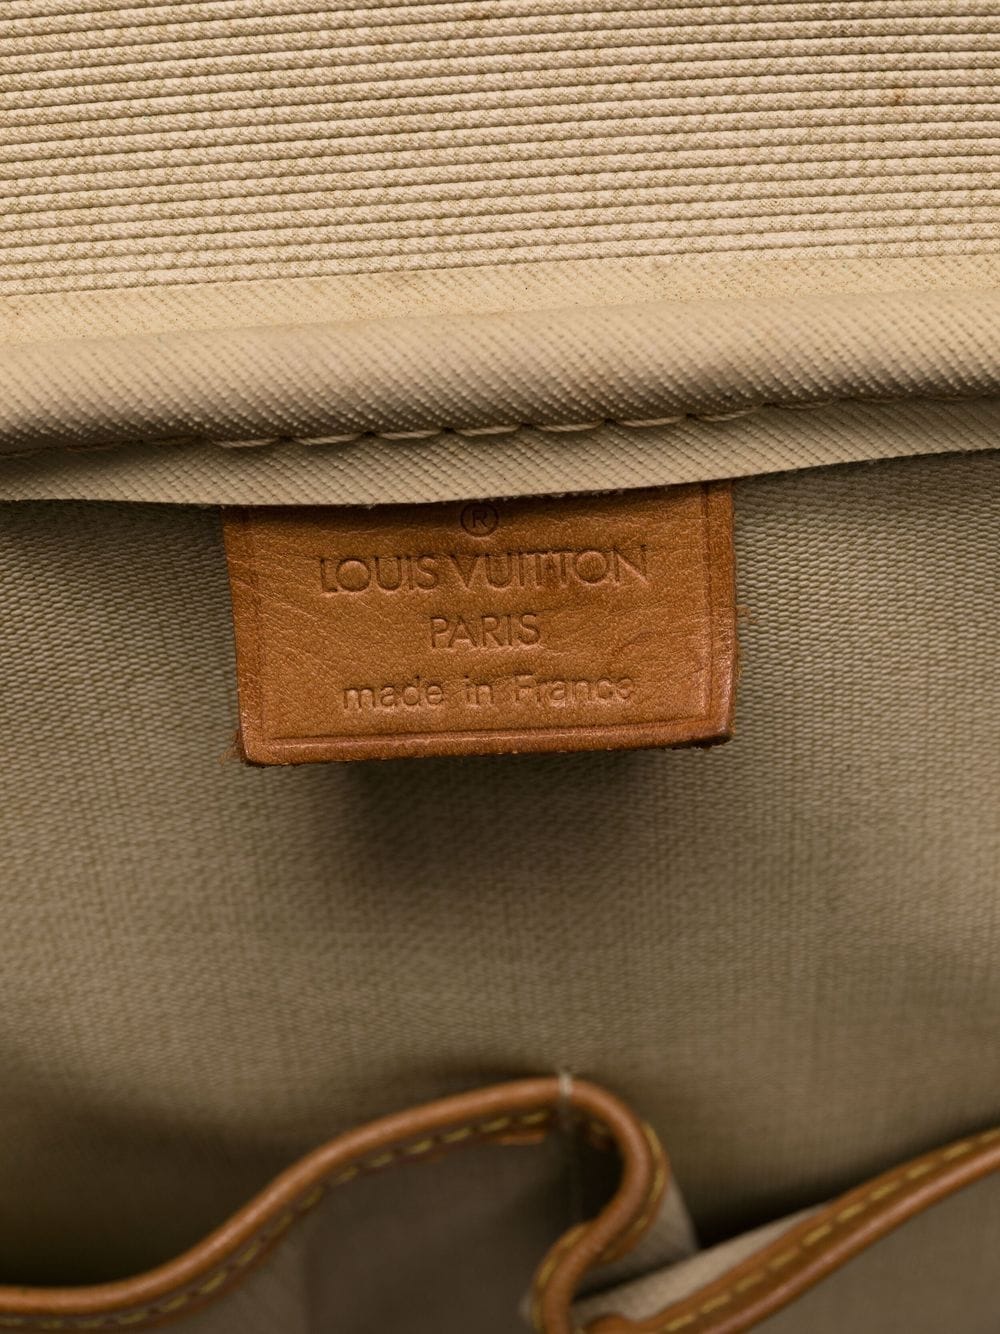 Louis Vuitton Vintage Classic Shopper Tote, $899, farfetch.com